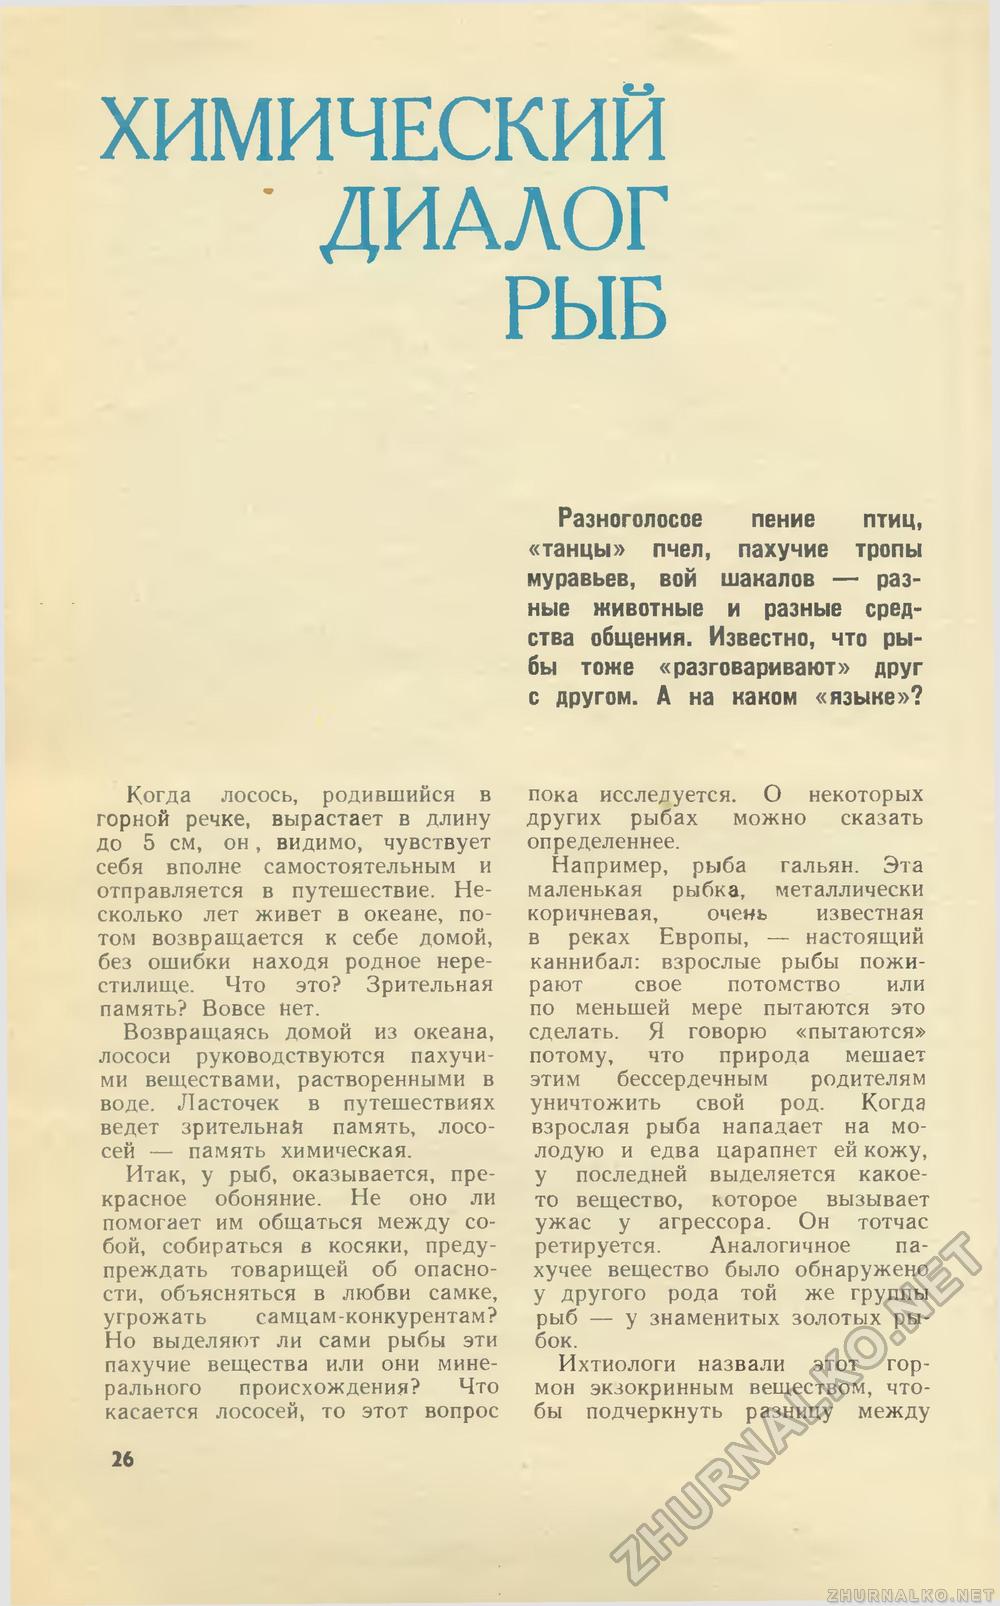   1973-01,  28